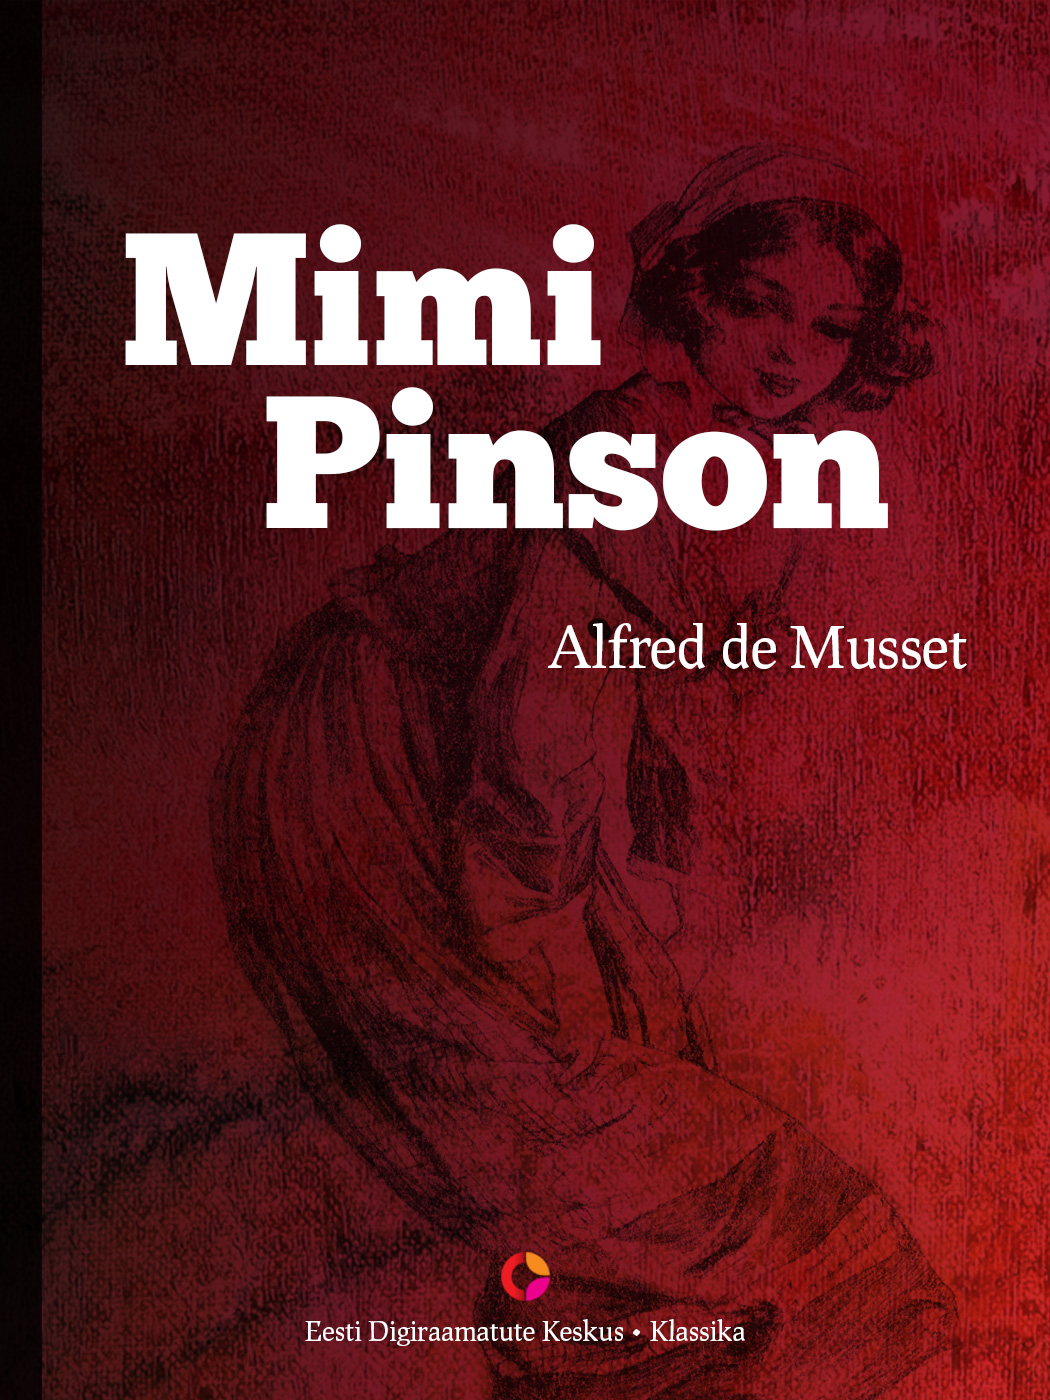 Книга Mimi Pinson из серии , созданная Alfred de Musset, может относится к жанру Зарубежная старинная литература, Литература 19 века, Зарубежная классика. Стоимость электронной книги Mimi Pinson с идентификатором 21184548 составляет 284.87 руб.